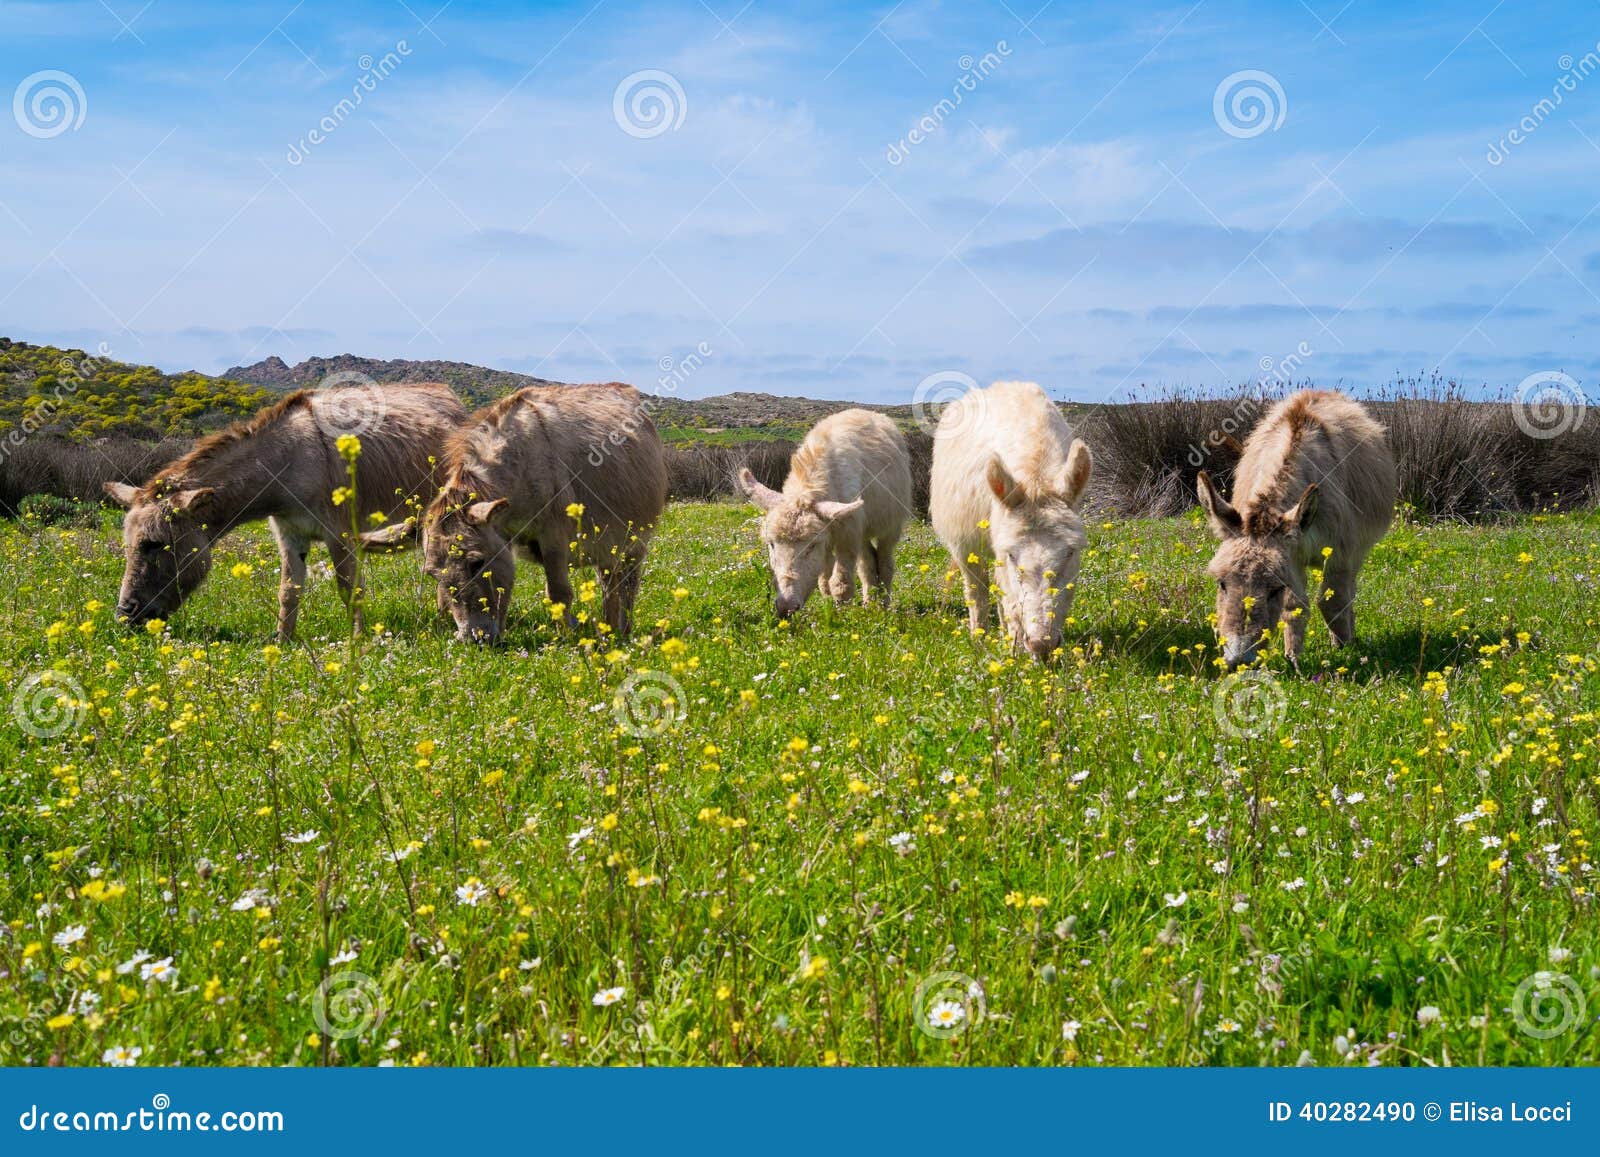 donkeys in asinara island in sardinia, italy